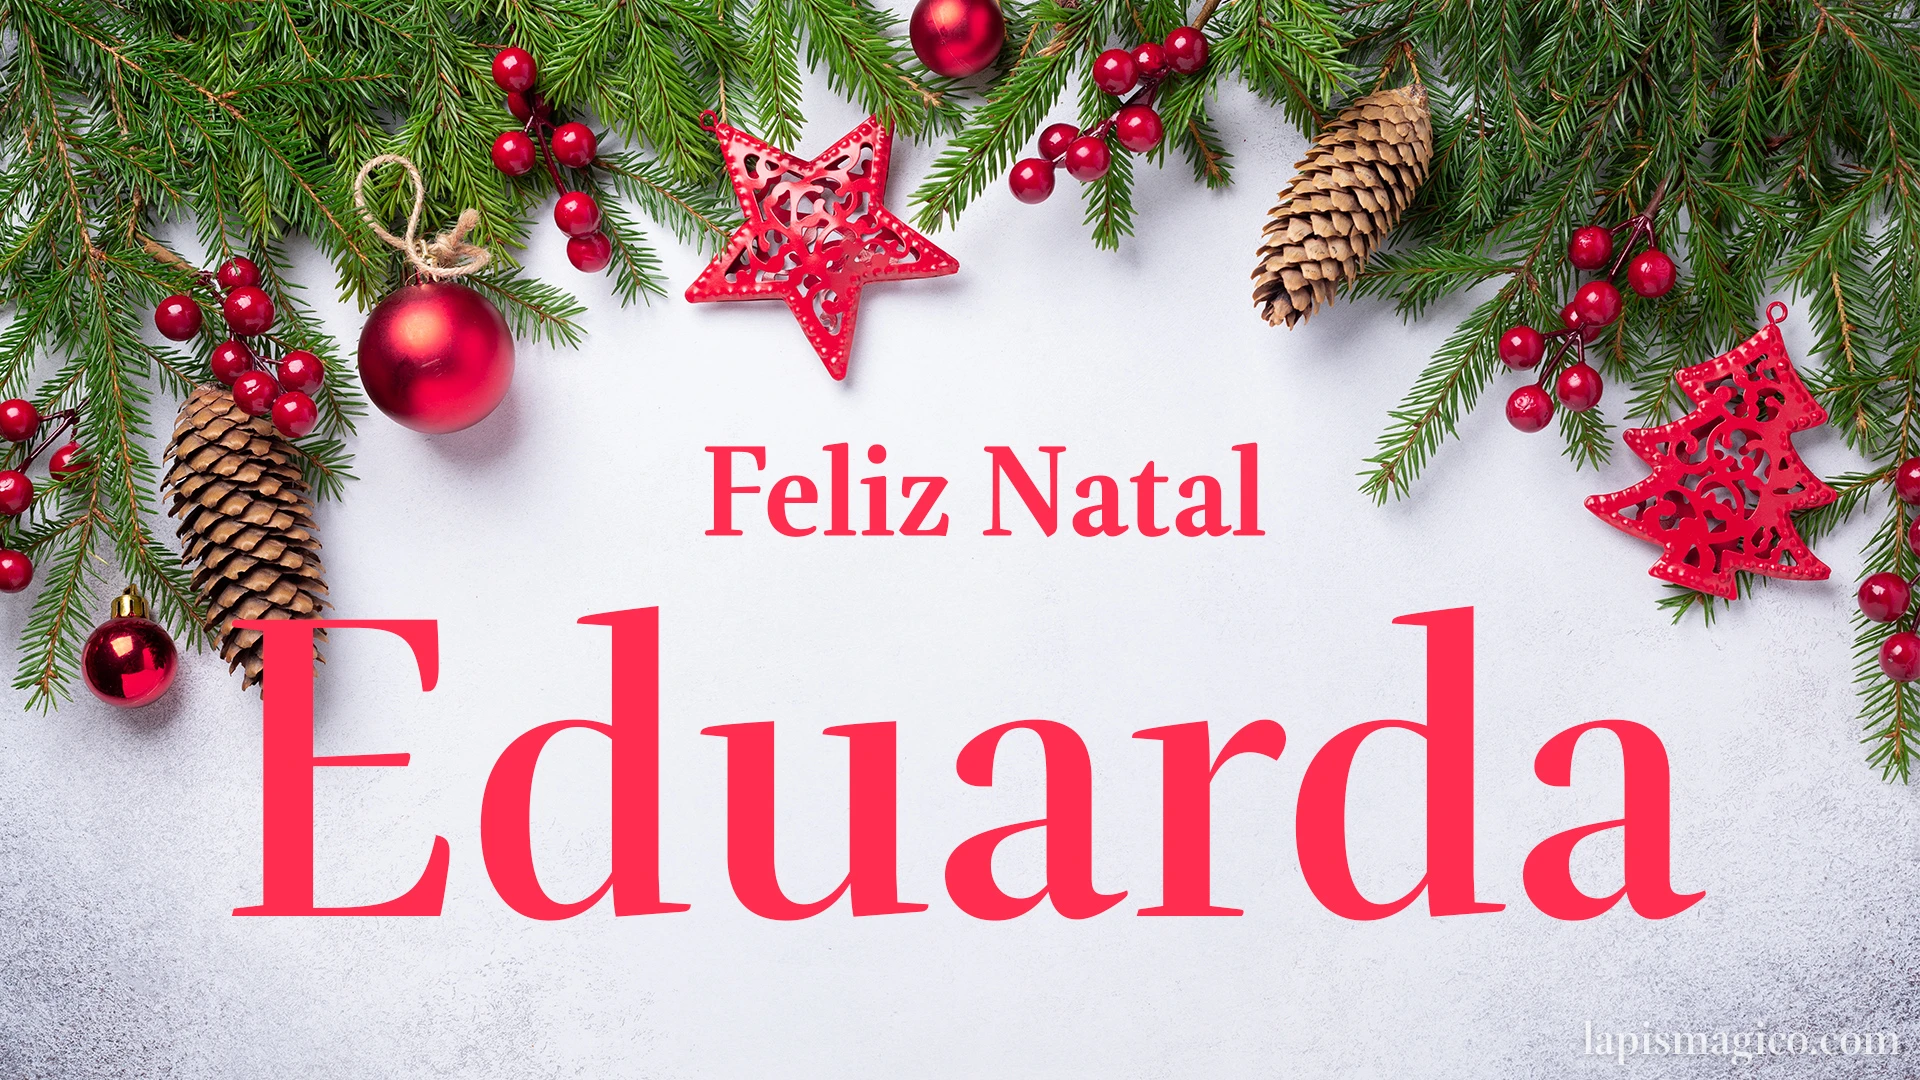 Oh Eduarda, cinco postais de Feliz Natal Postal com o teu nome